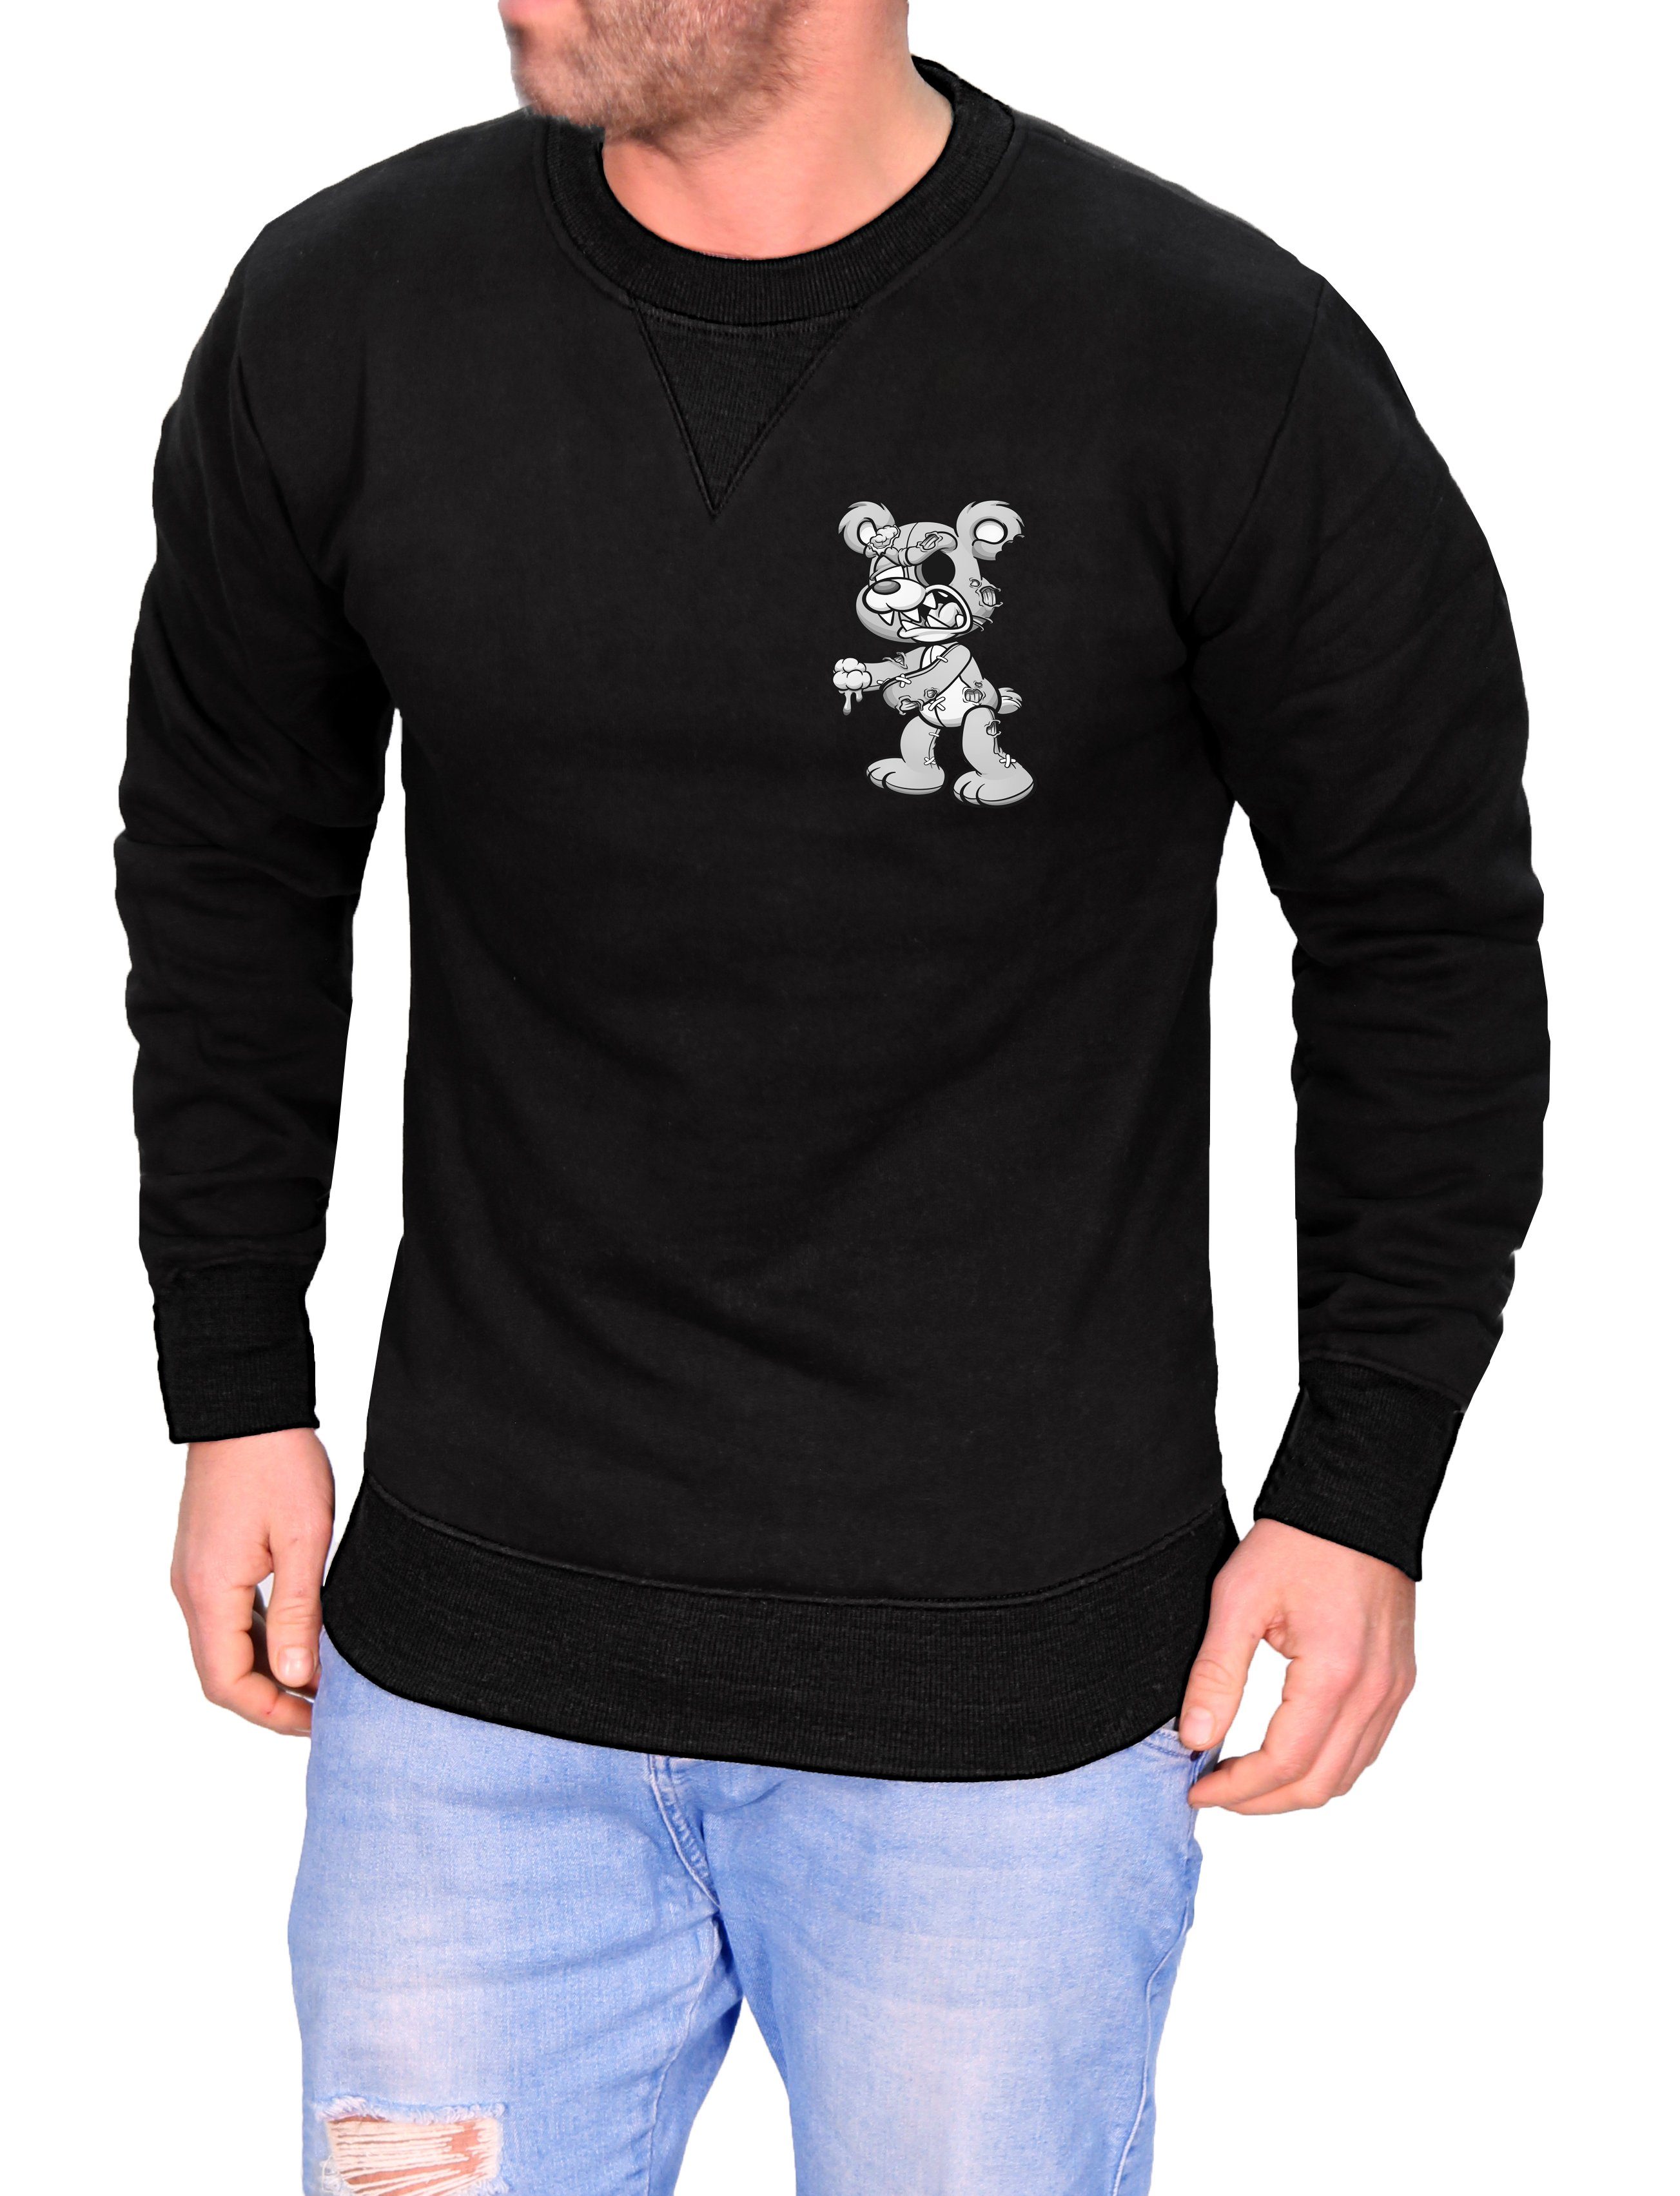 Sweatshirt Motiv mit Herren Pulli Pullover Langarmshirt Cartoon RMK Rundhalspullover Schwarz-Grau